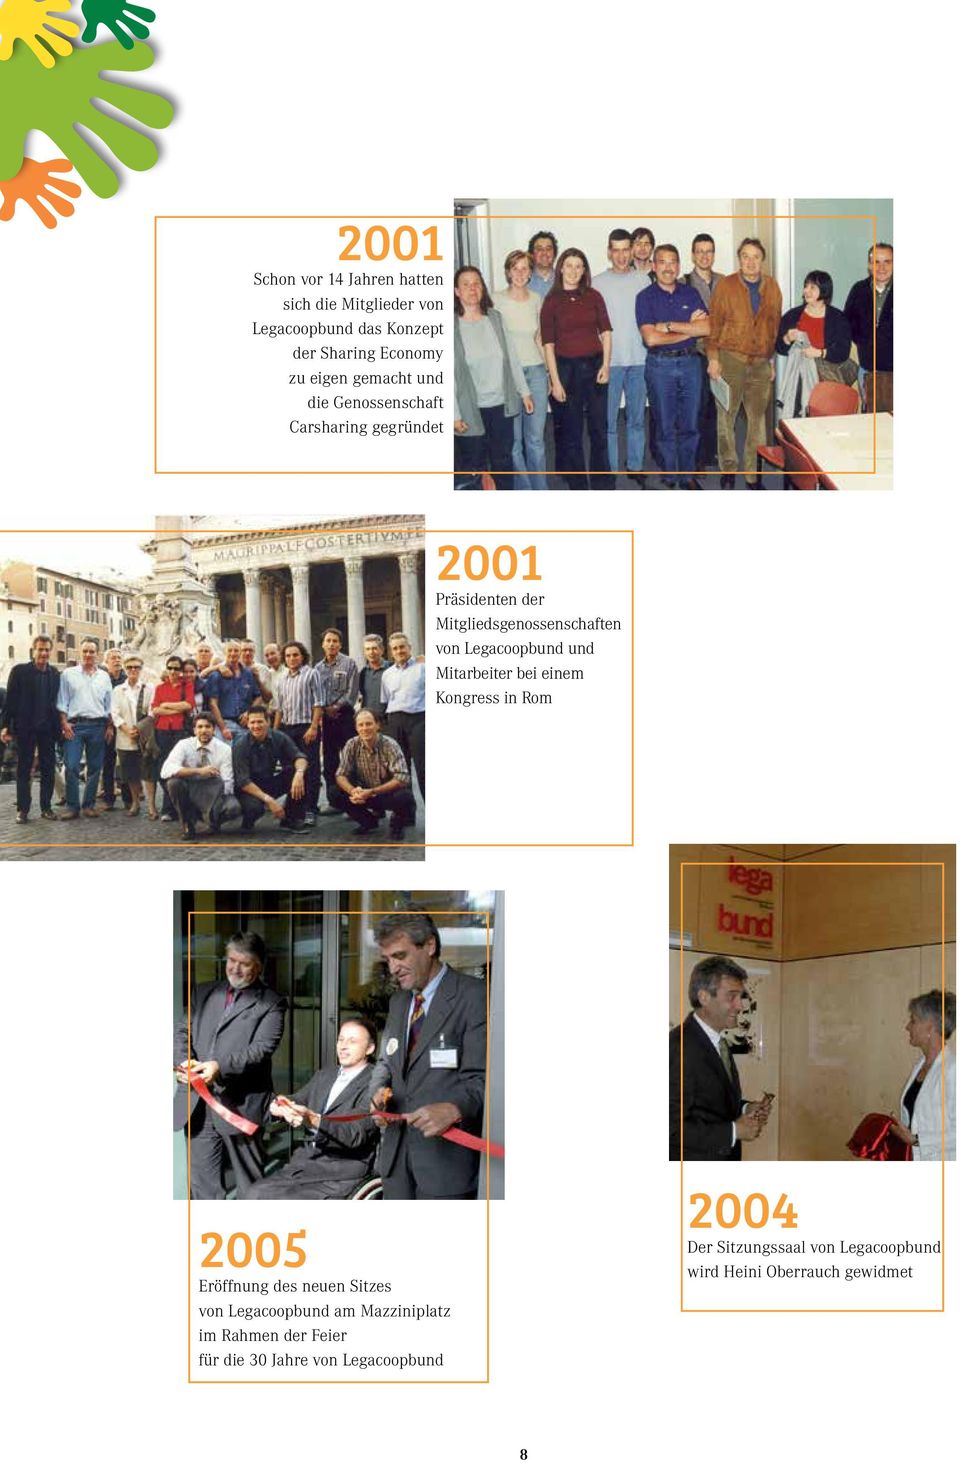 Legacoopbund und Mitarbeiter bei einem Kongress in Rom 2005 Eröffnung des neuen Sitzes von Legacoopbund am